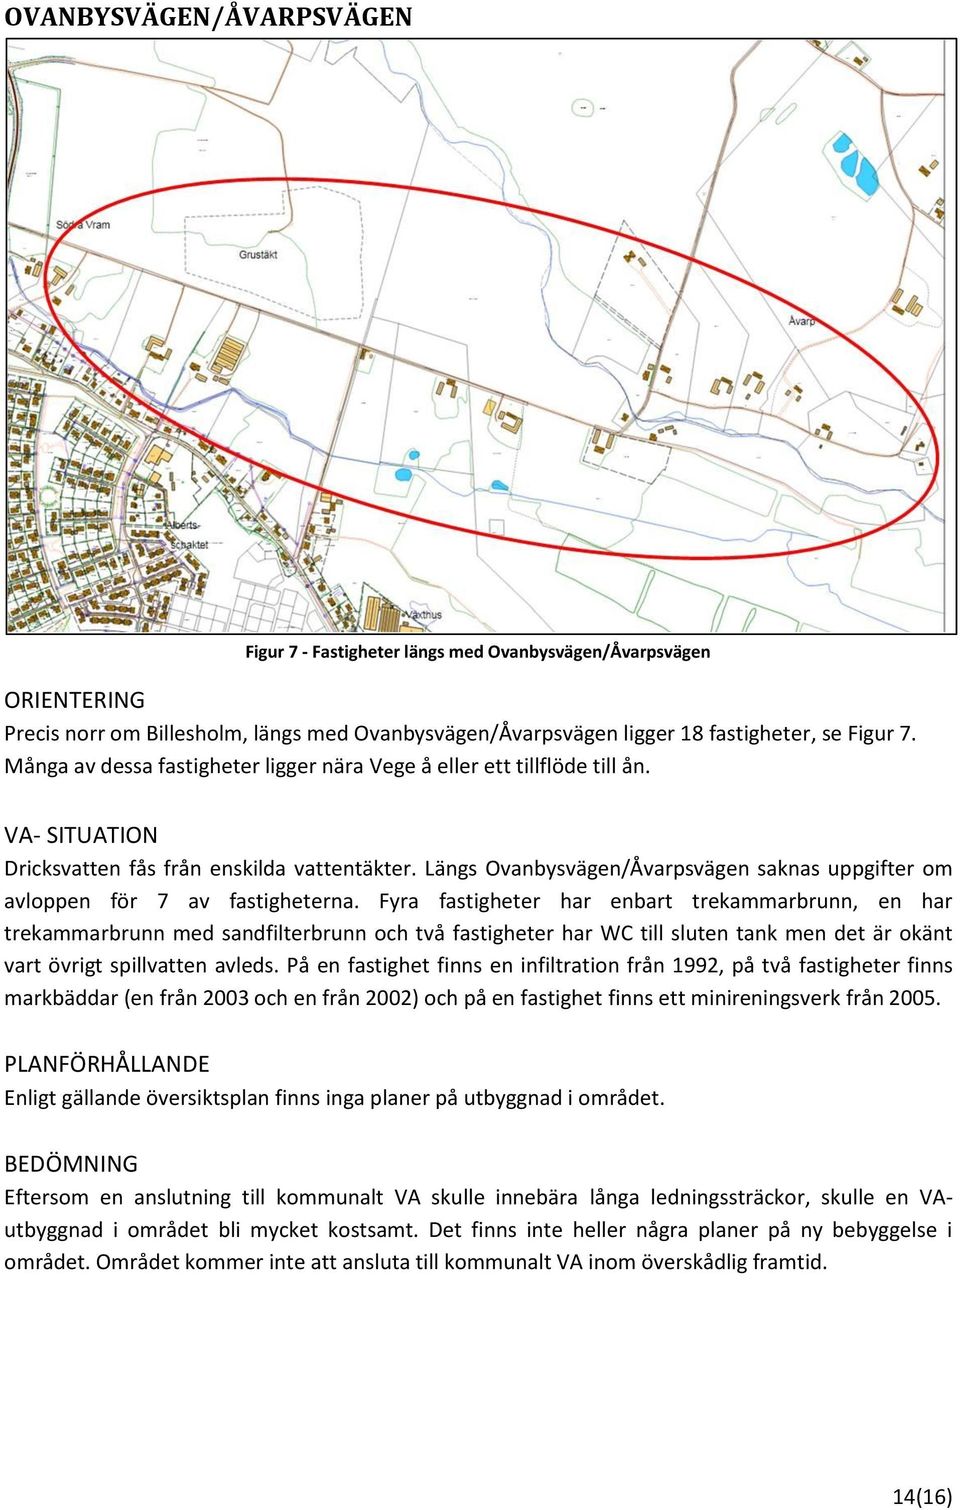 Längs Ovanbysvägen/Åvarpsvägen saknas uppgifter om avloppen för 7 av fastigheterna.